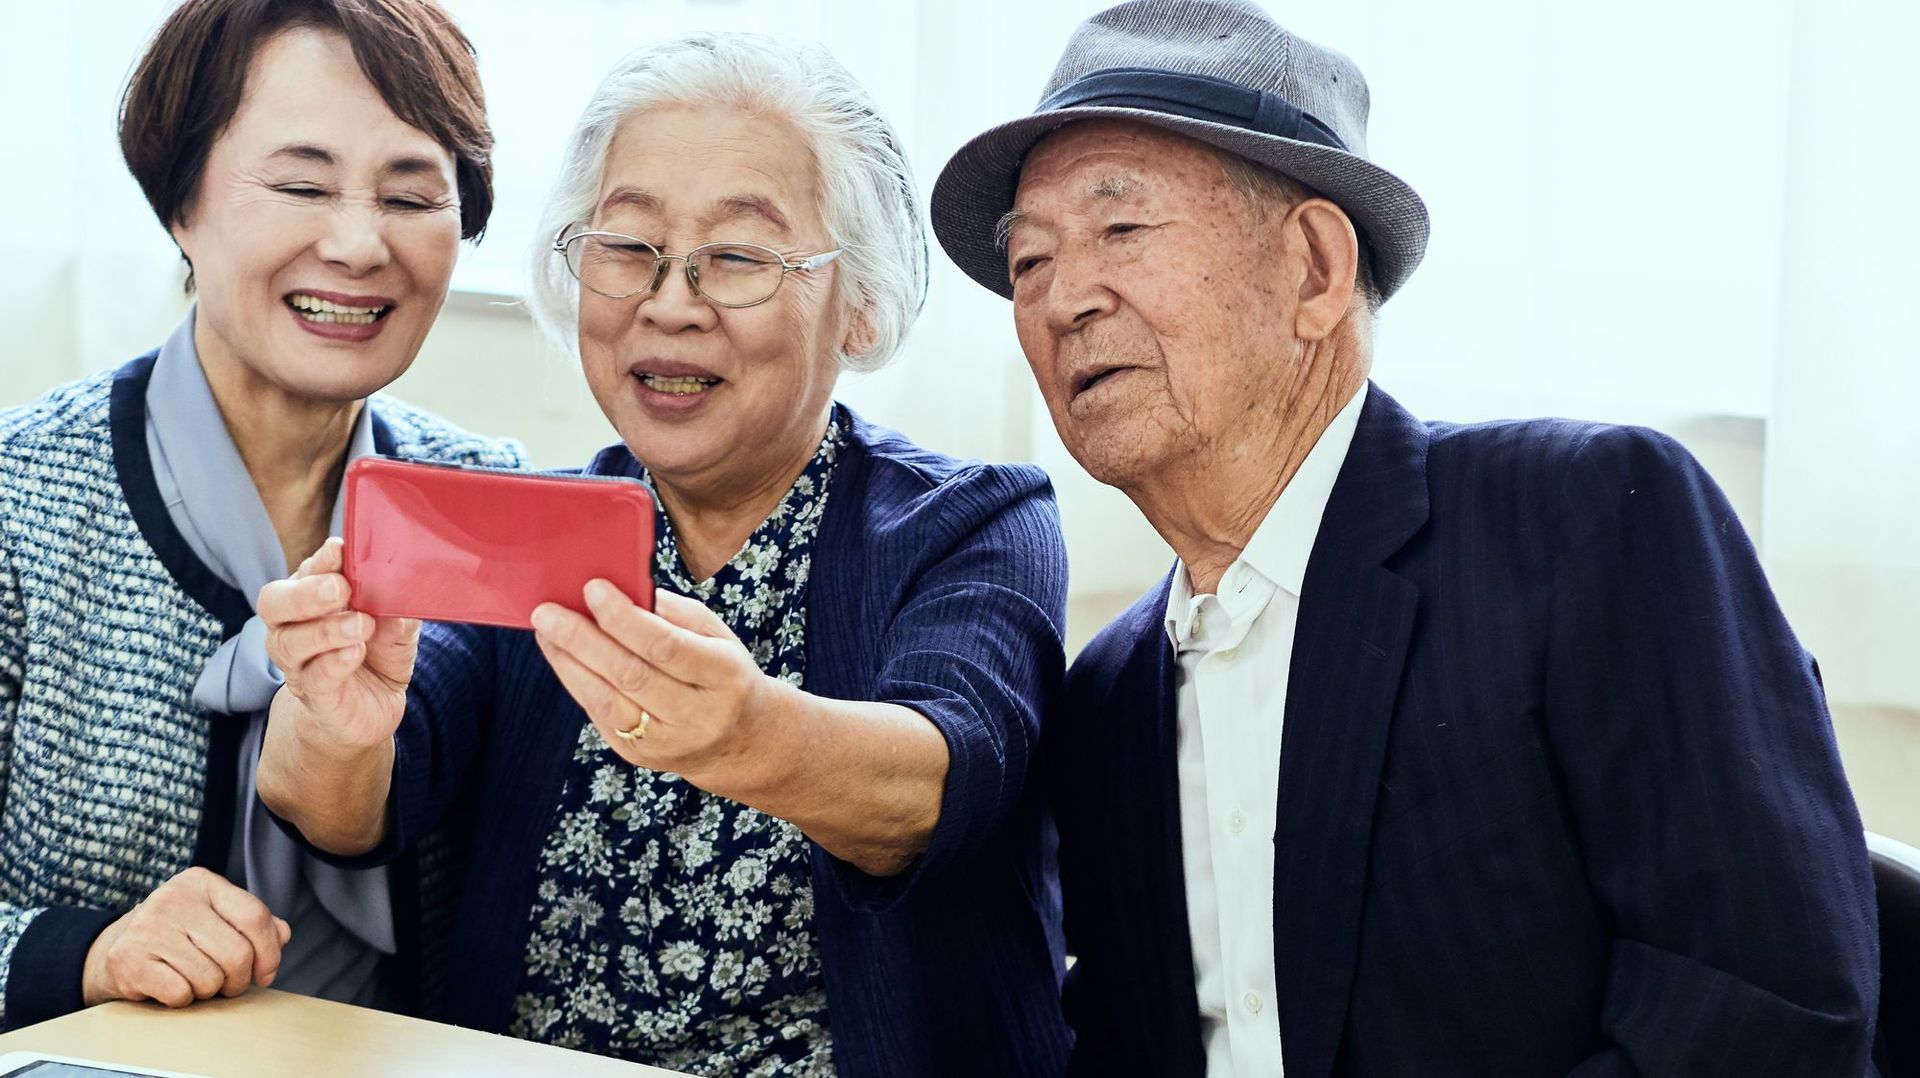 Les personnes âgées seraient plus respectées au Japon et en Chine qu’aux Etats-Unis